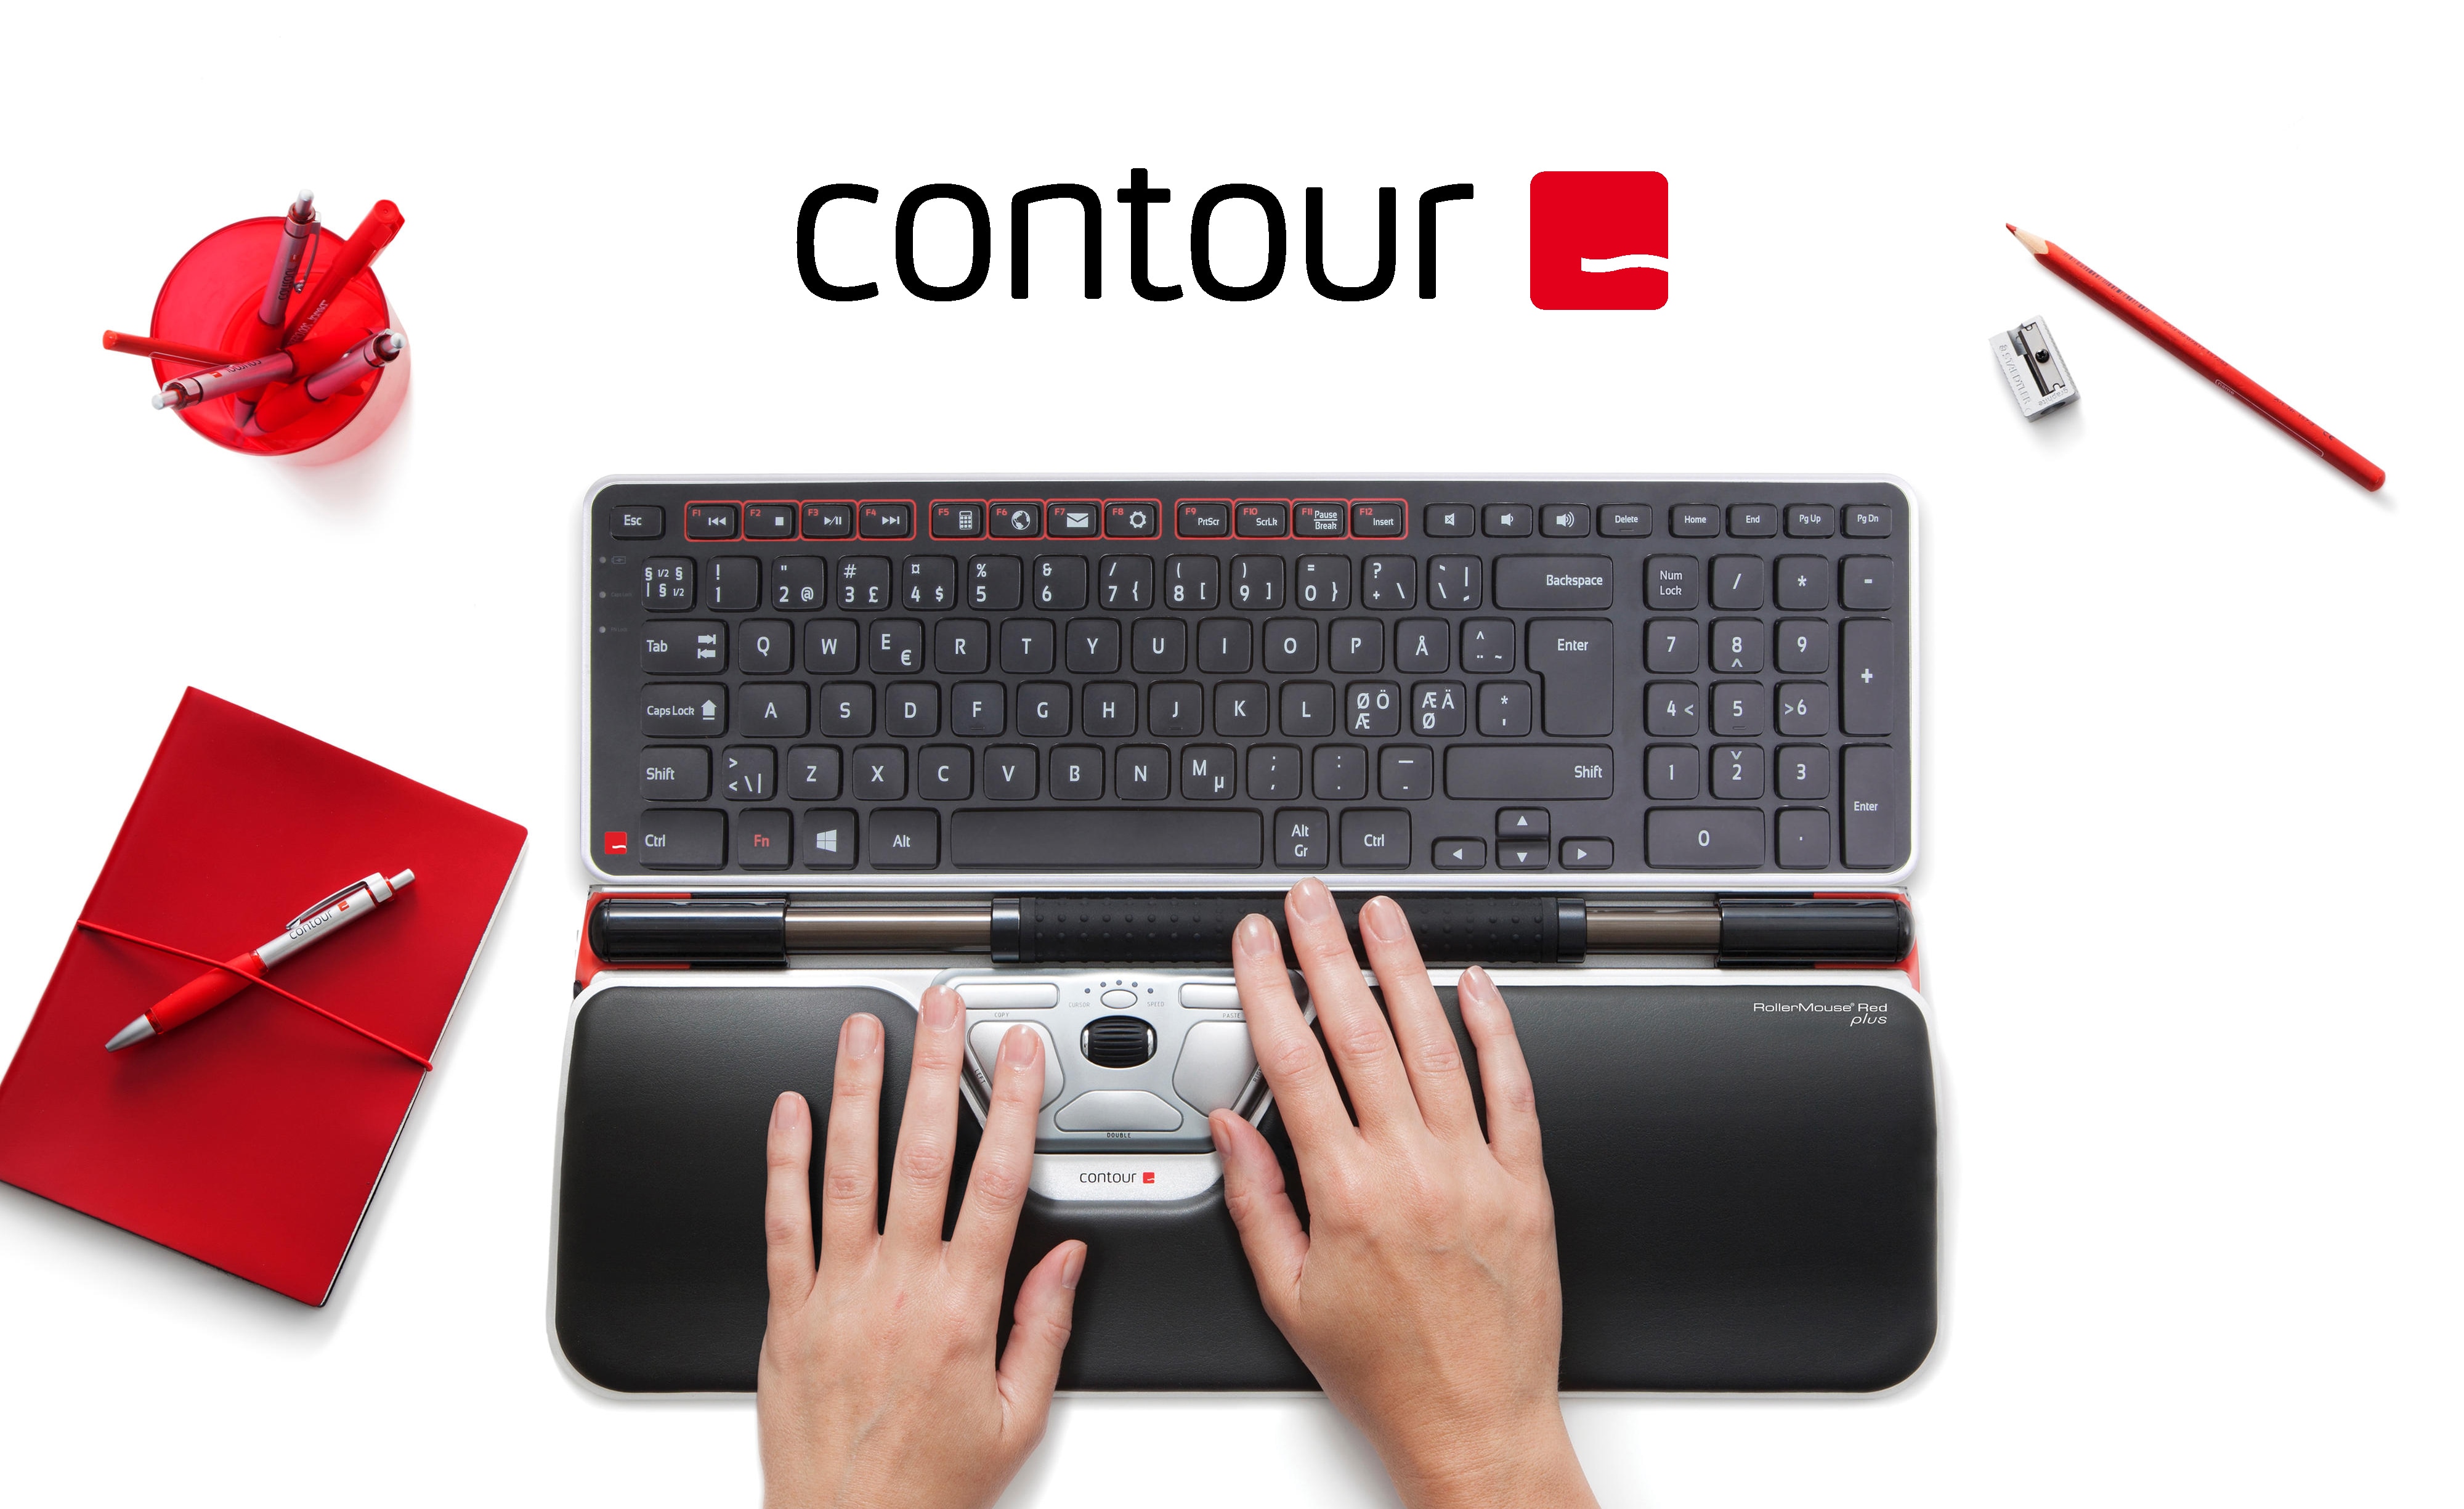 Contour tilbehør på et hvidt bord ved siden af en computer skærm og røde kontorartikler